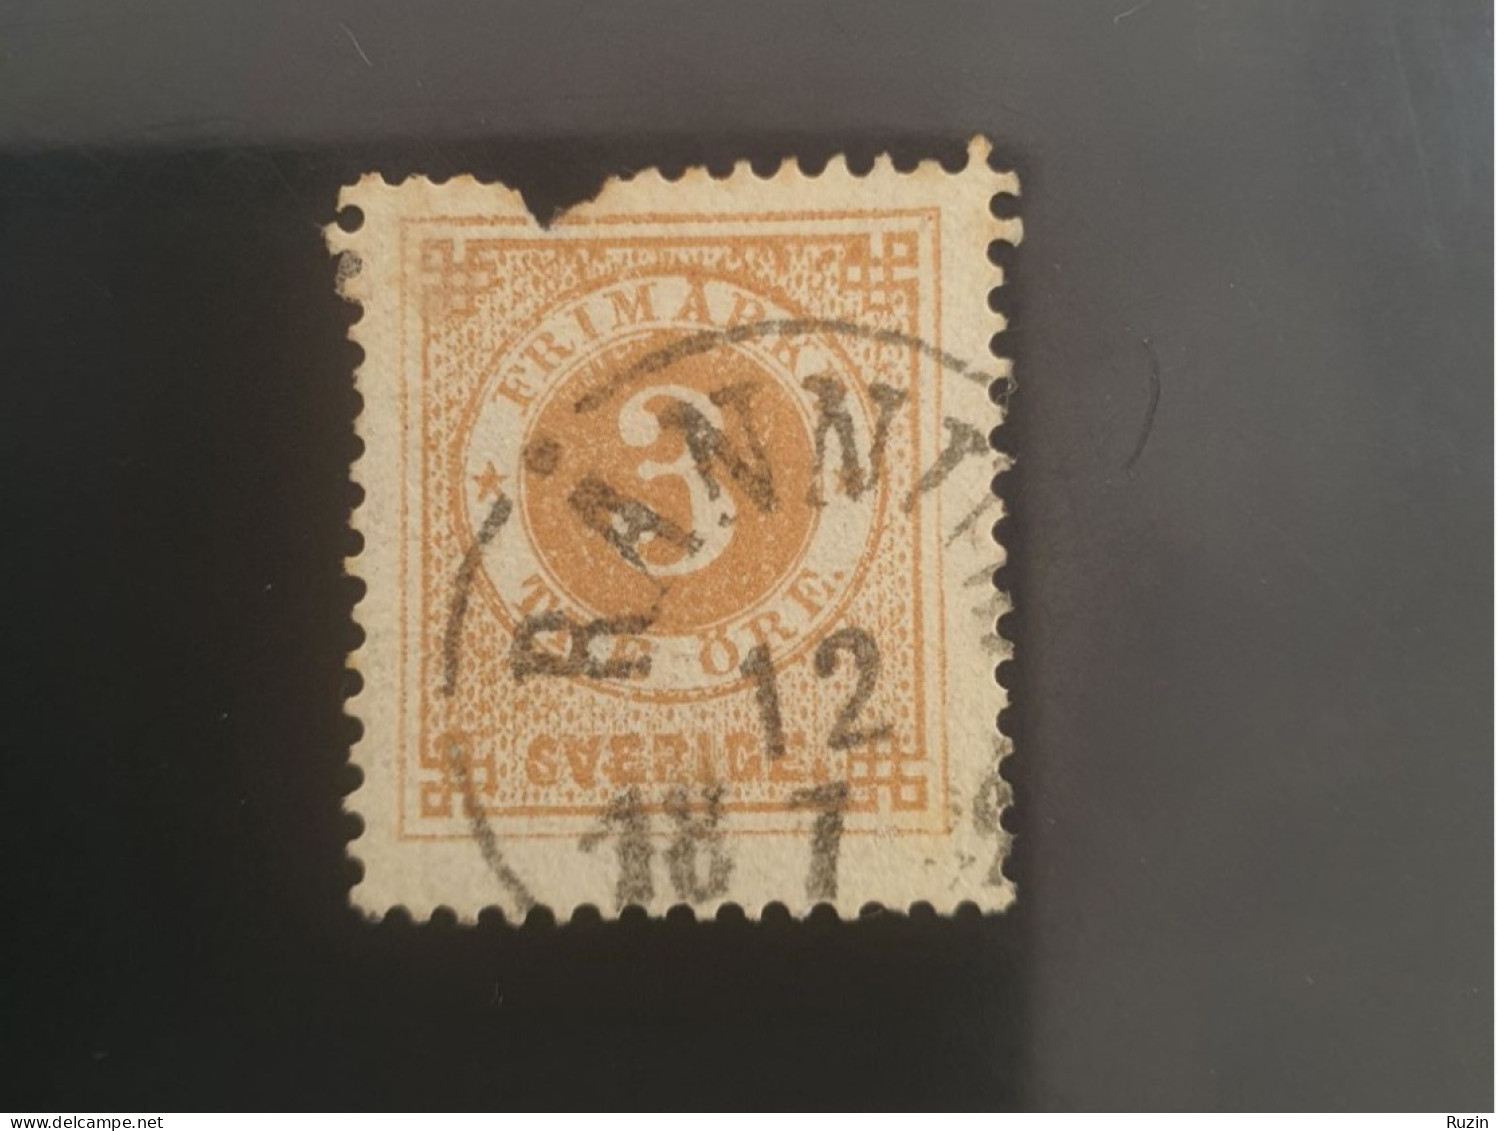 Sweden 1886 Circle Type Stamp 3 öre Yellow Brown - Usati